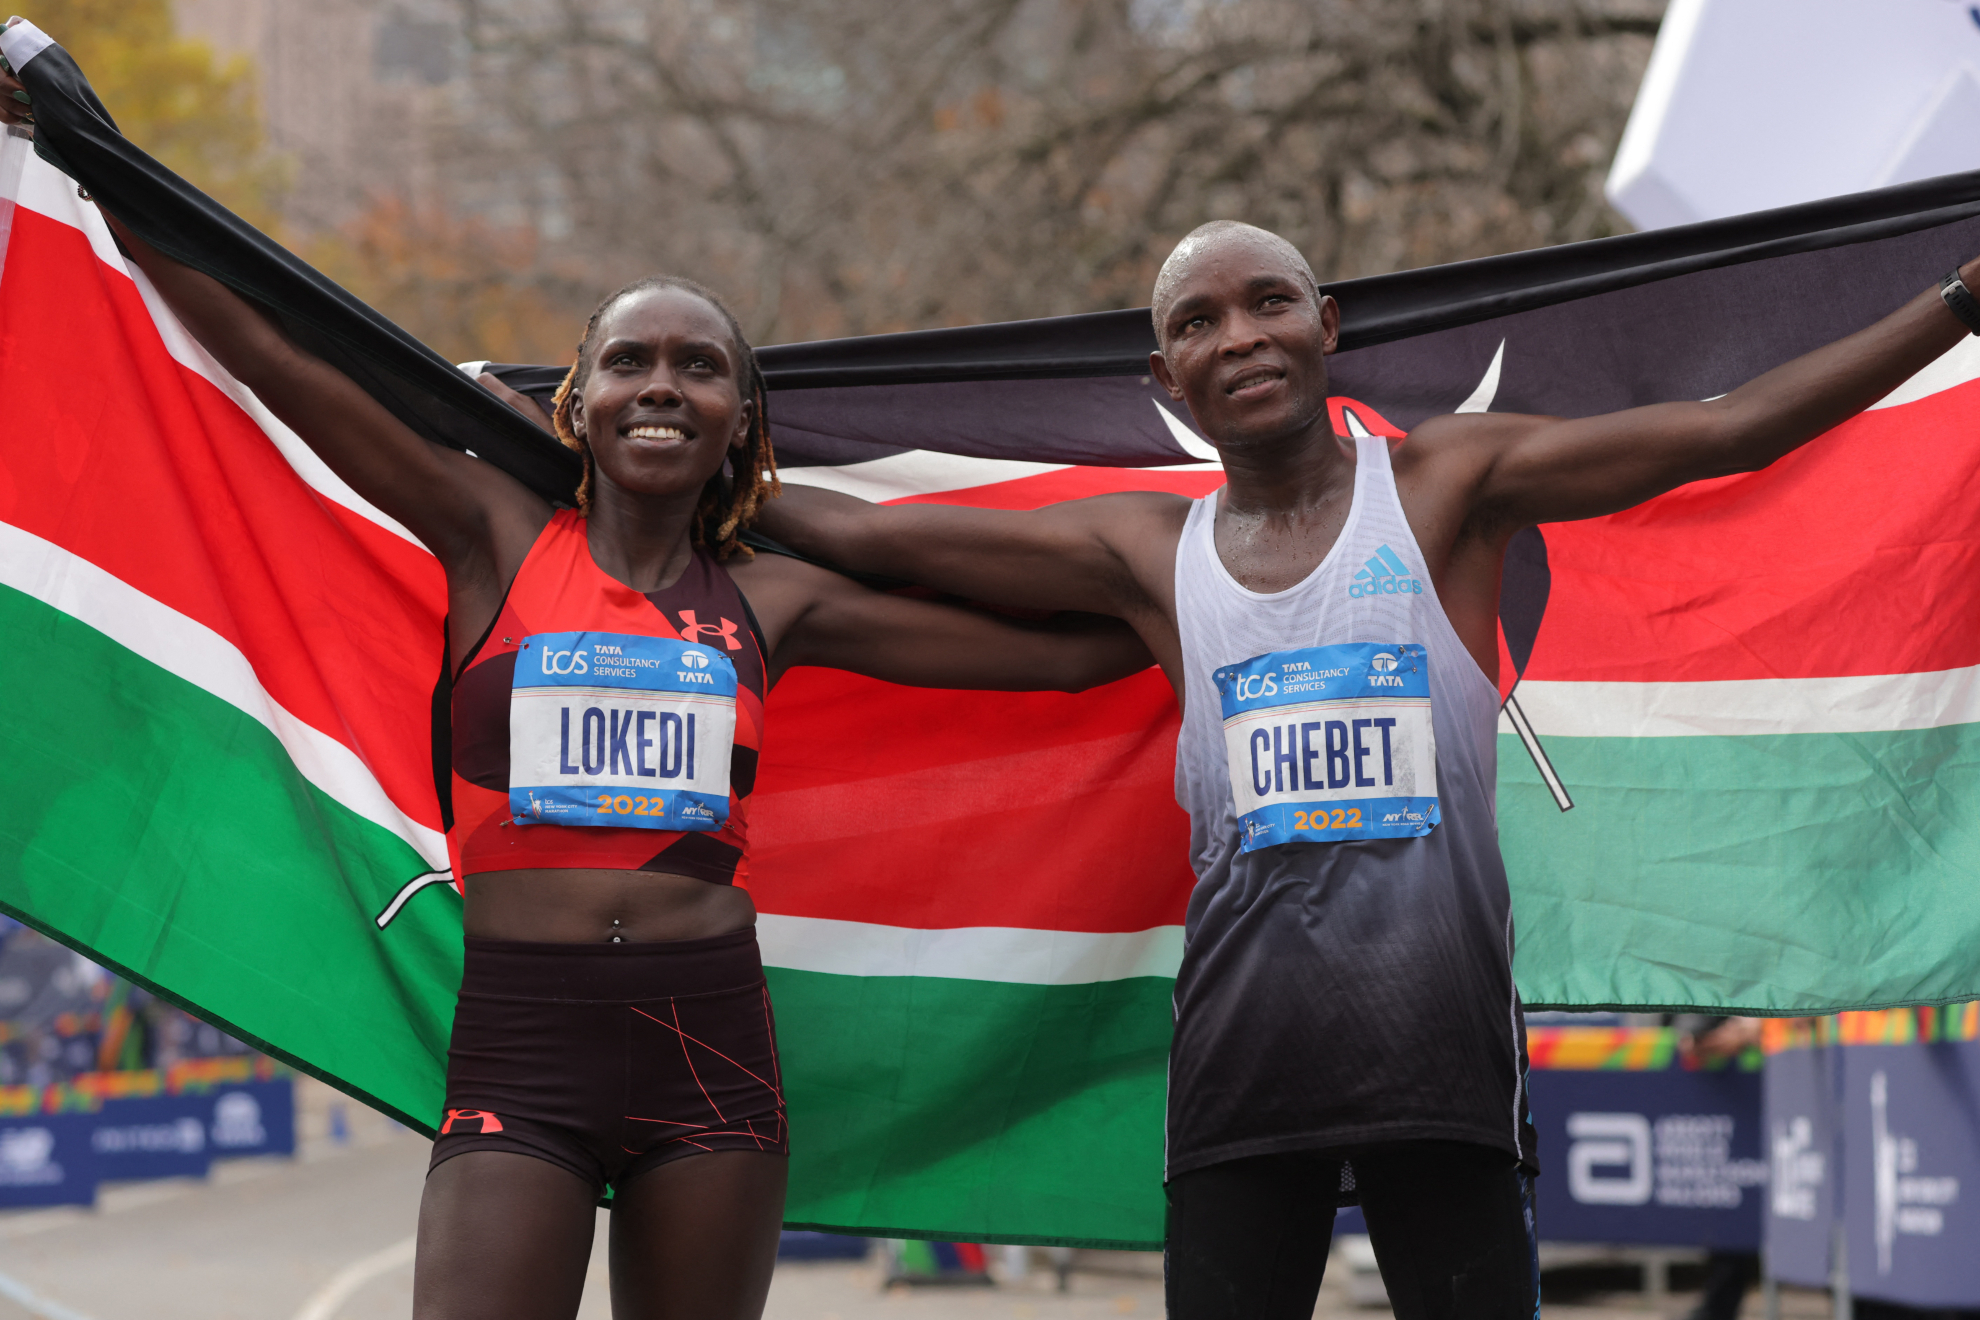 Kenia reina en el maratn de Nueva York: Chebet y Lokedi suben a lo...